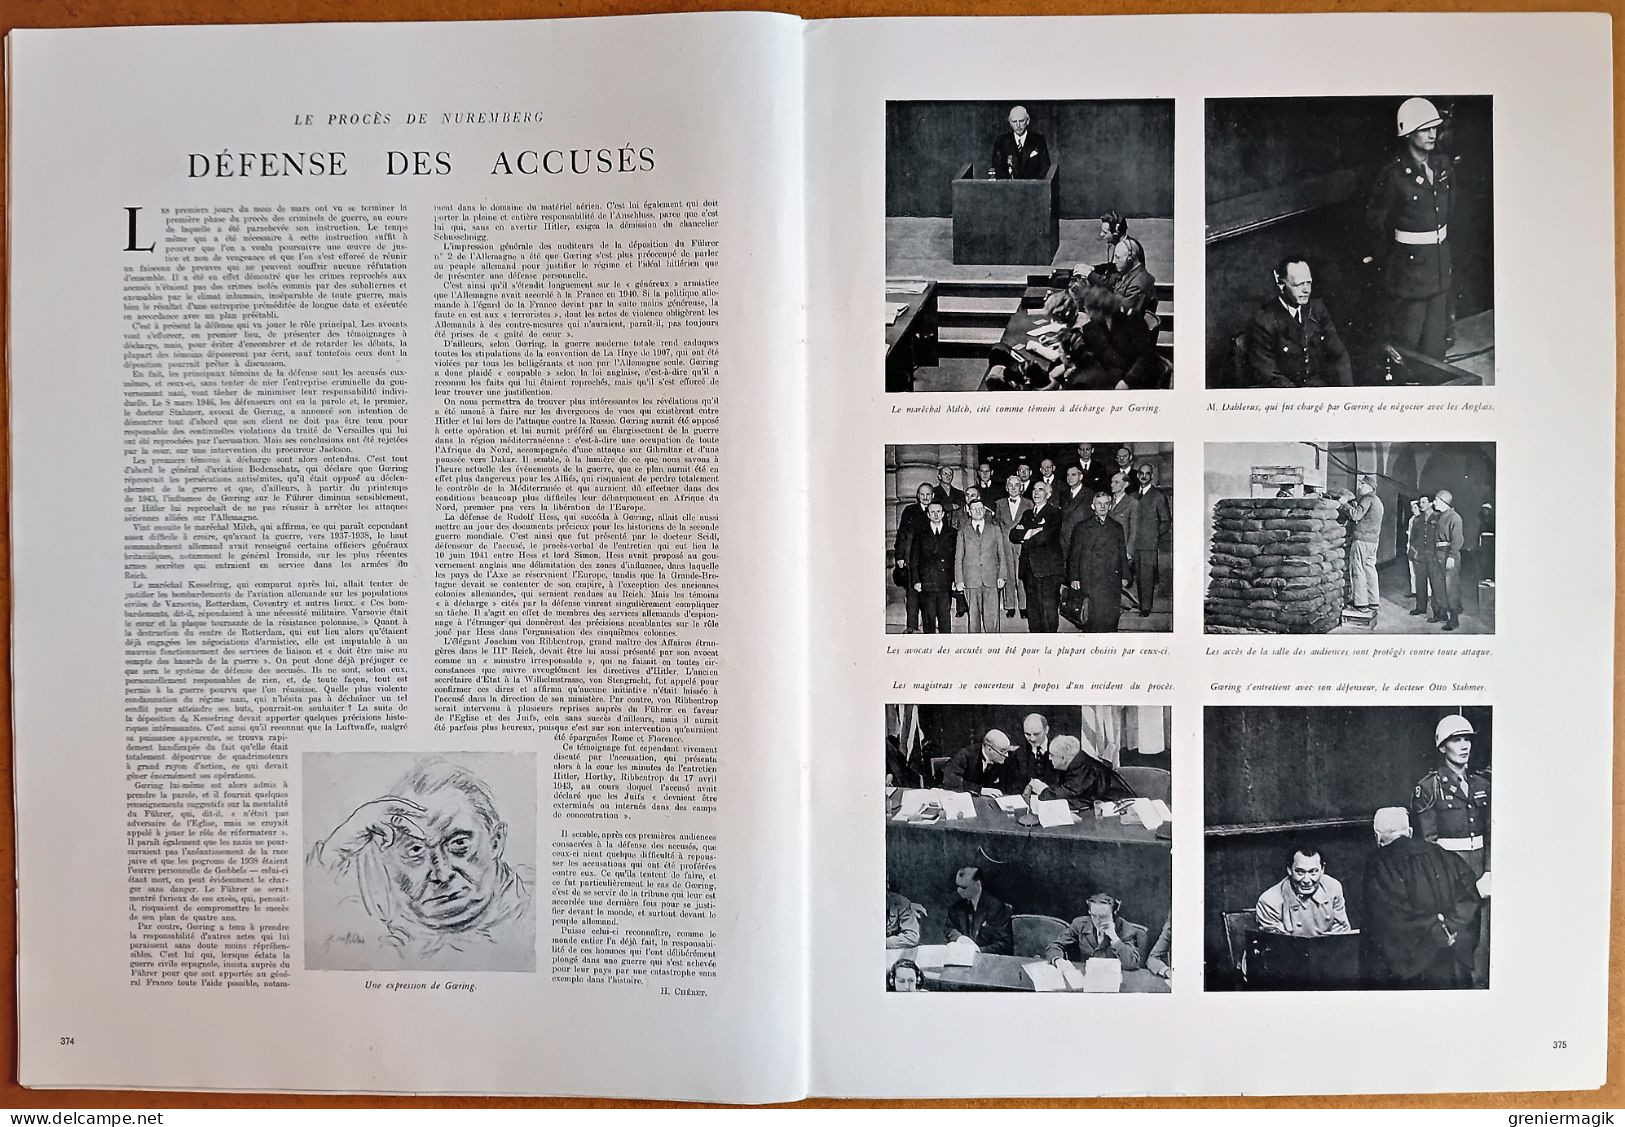 France Illustration N°27 06/04/1946 Jubilé de l'Aga Khan/Norvège/Vol à voile Marcelle Choisnet/Procès Nuremberg/Sarre